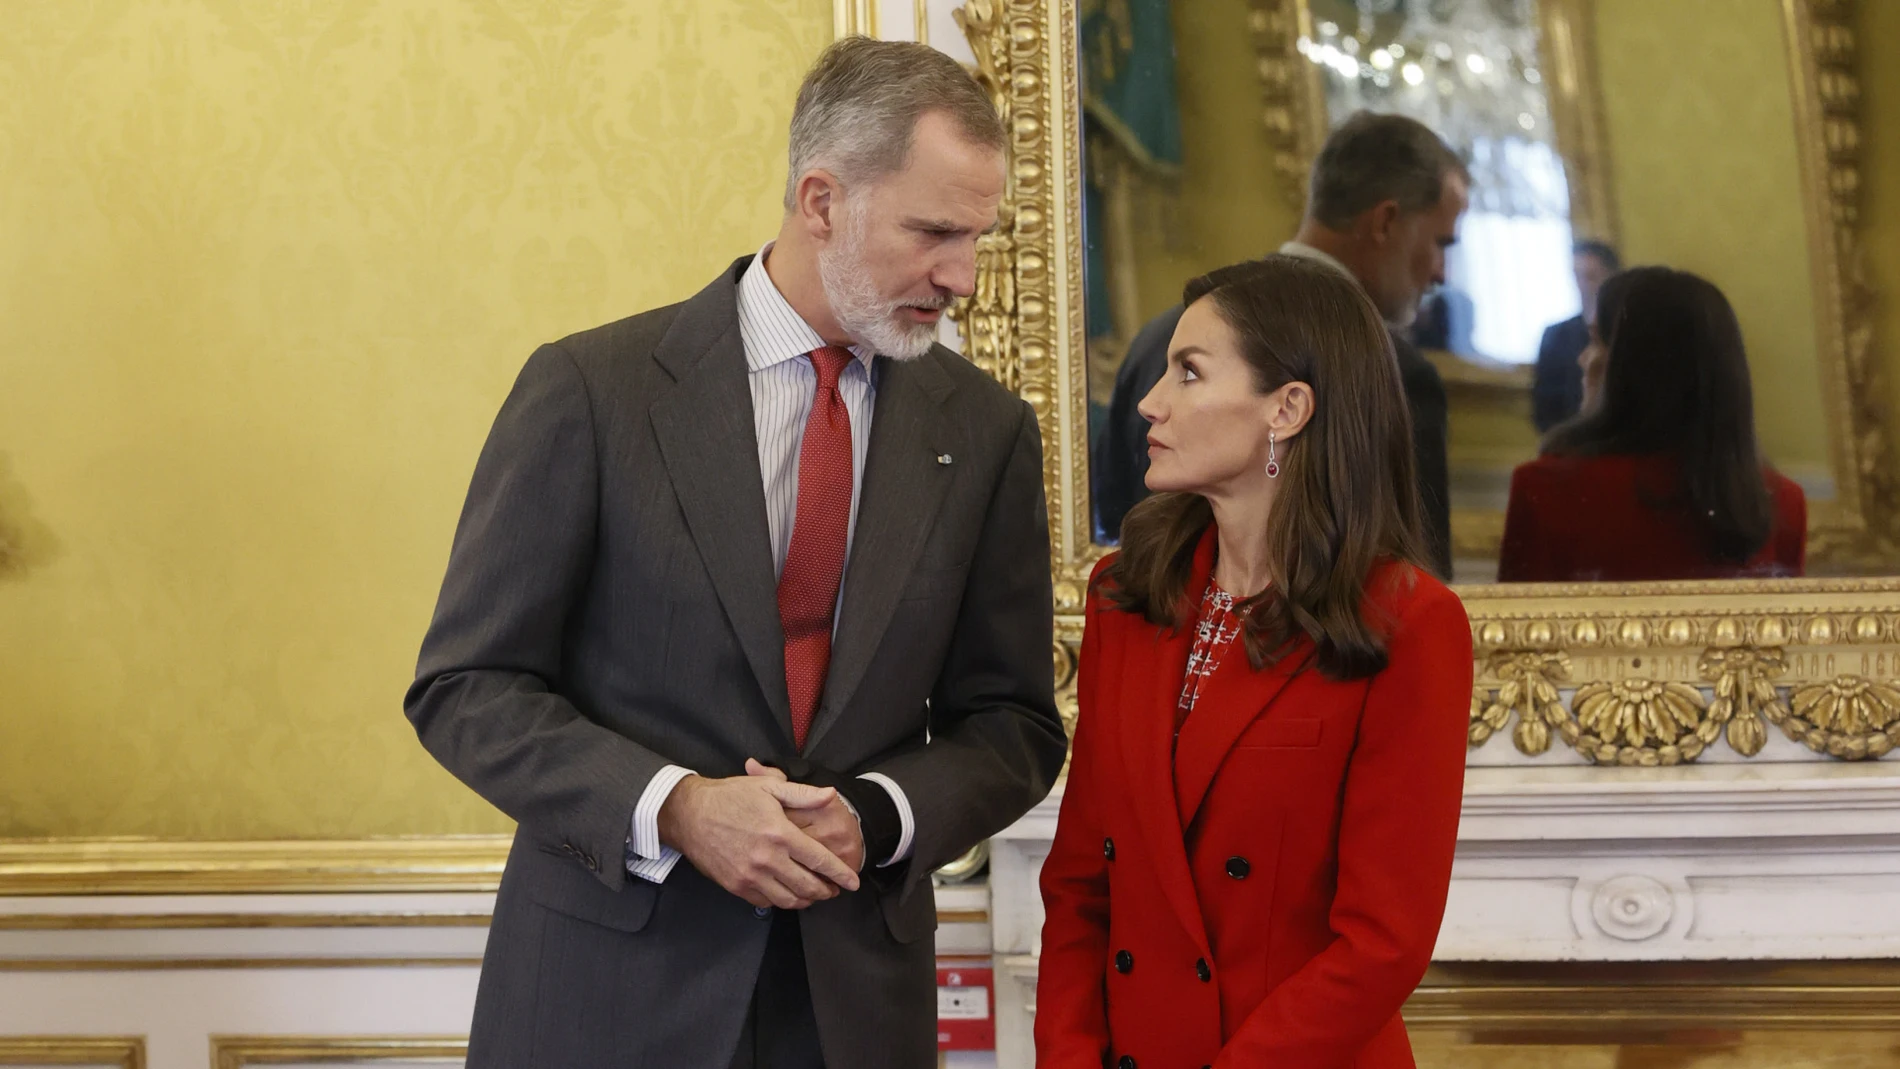 La Reina Letizia con traje rojo junto al Rey Felipe.